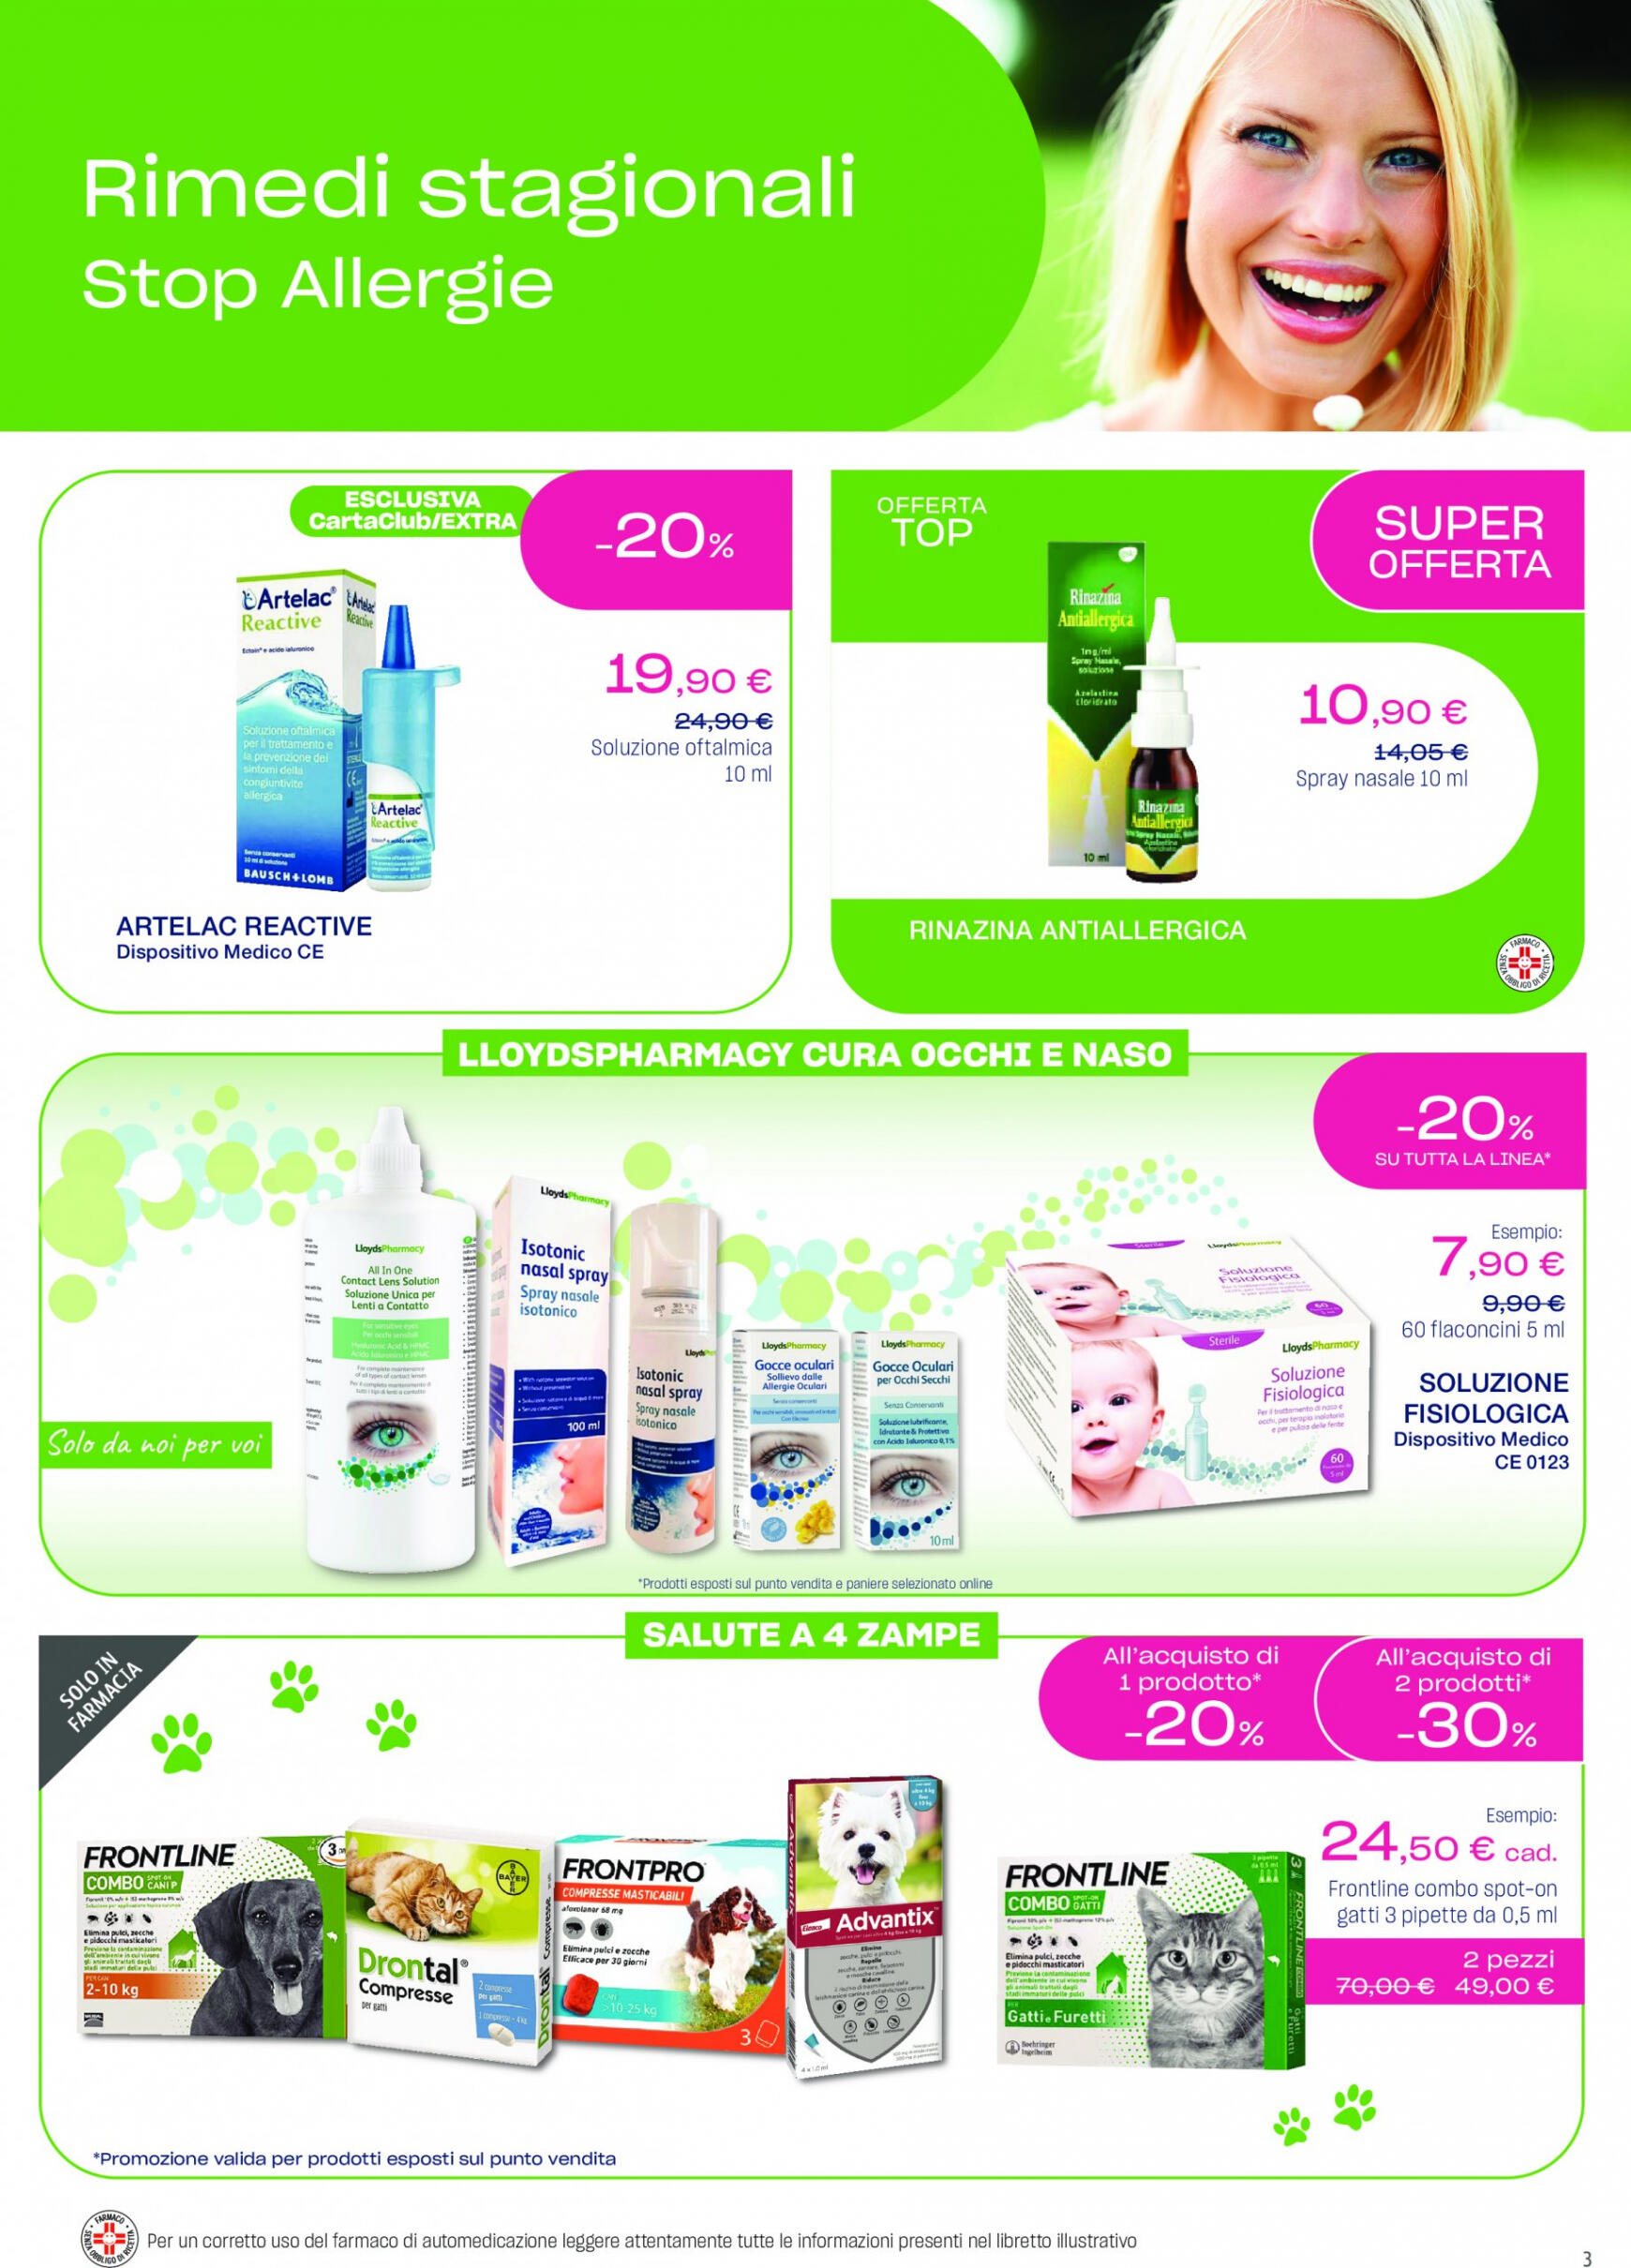 lloyds-farmacia - Nuovo volantino Lloyds Farmacia - Per la festa della mama ogni gesto e bellezza! 02.05. - 28.05. - page: 3